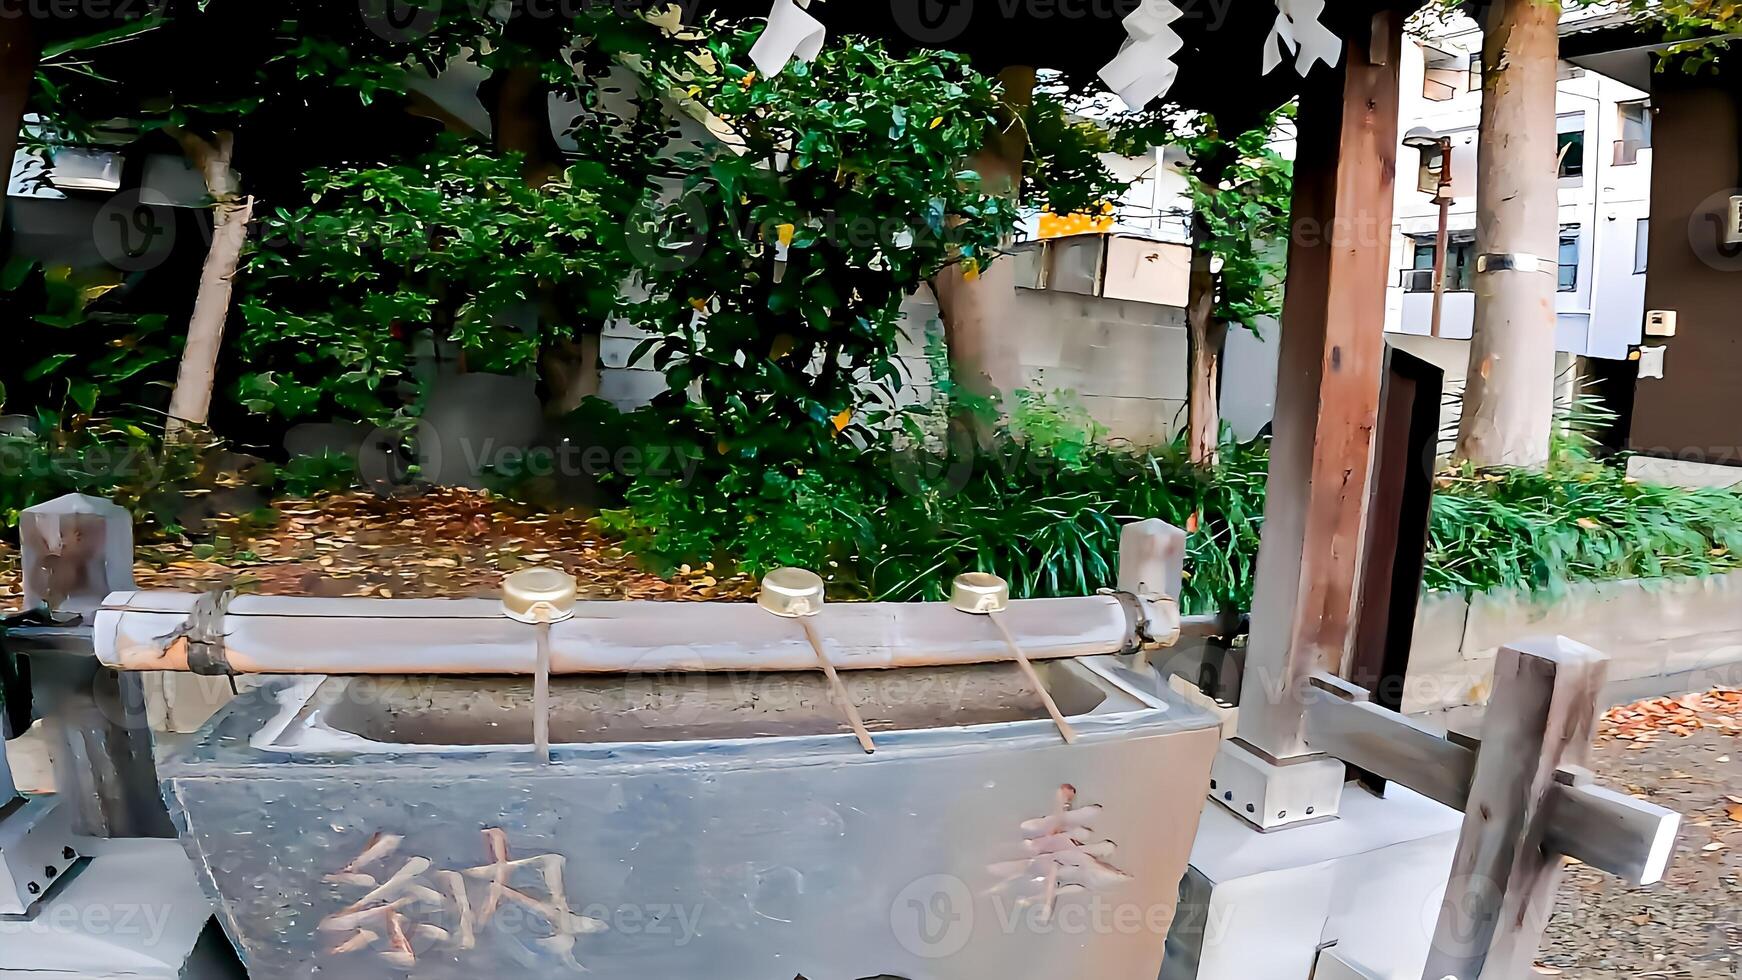 il del santuario chozubya. lavare il tuo bocca e mani...takezuka santuario, un' santuario collocato nel takeotsuka, adachi reparto, tokyo, Giappone esso è disse quello durante il 978-982, is jingu era commissionato e costruito, foto